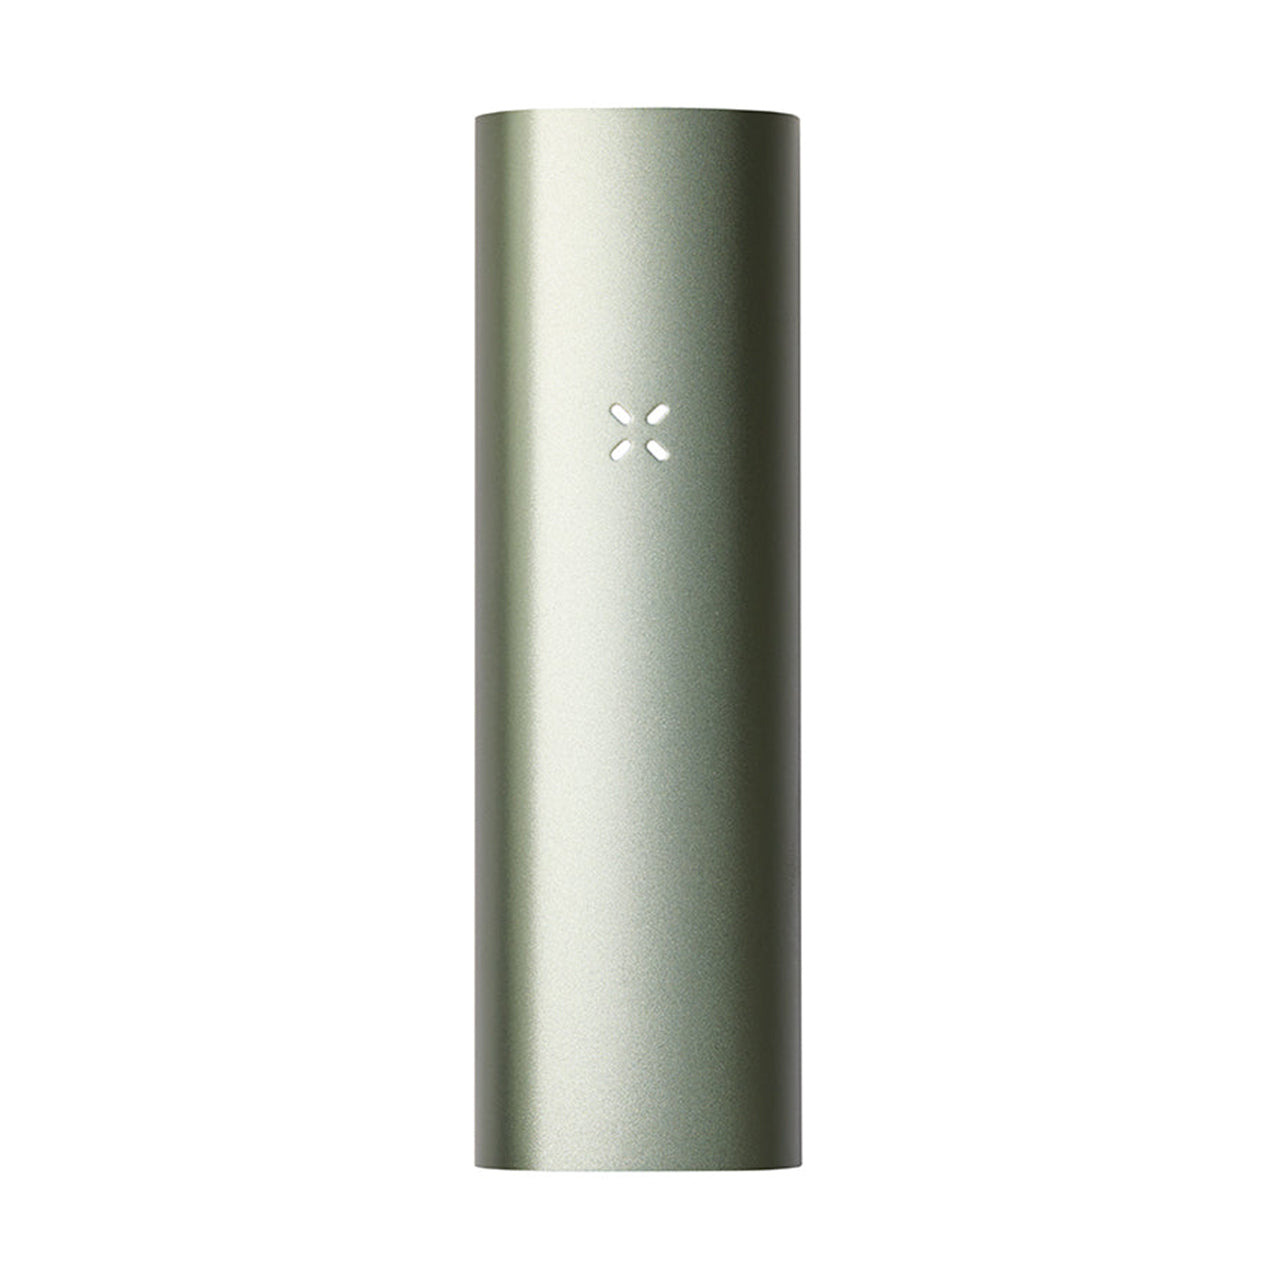 pax 3 portable herb vaporizer sage